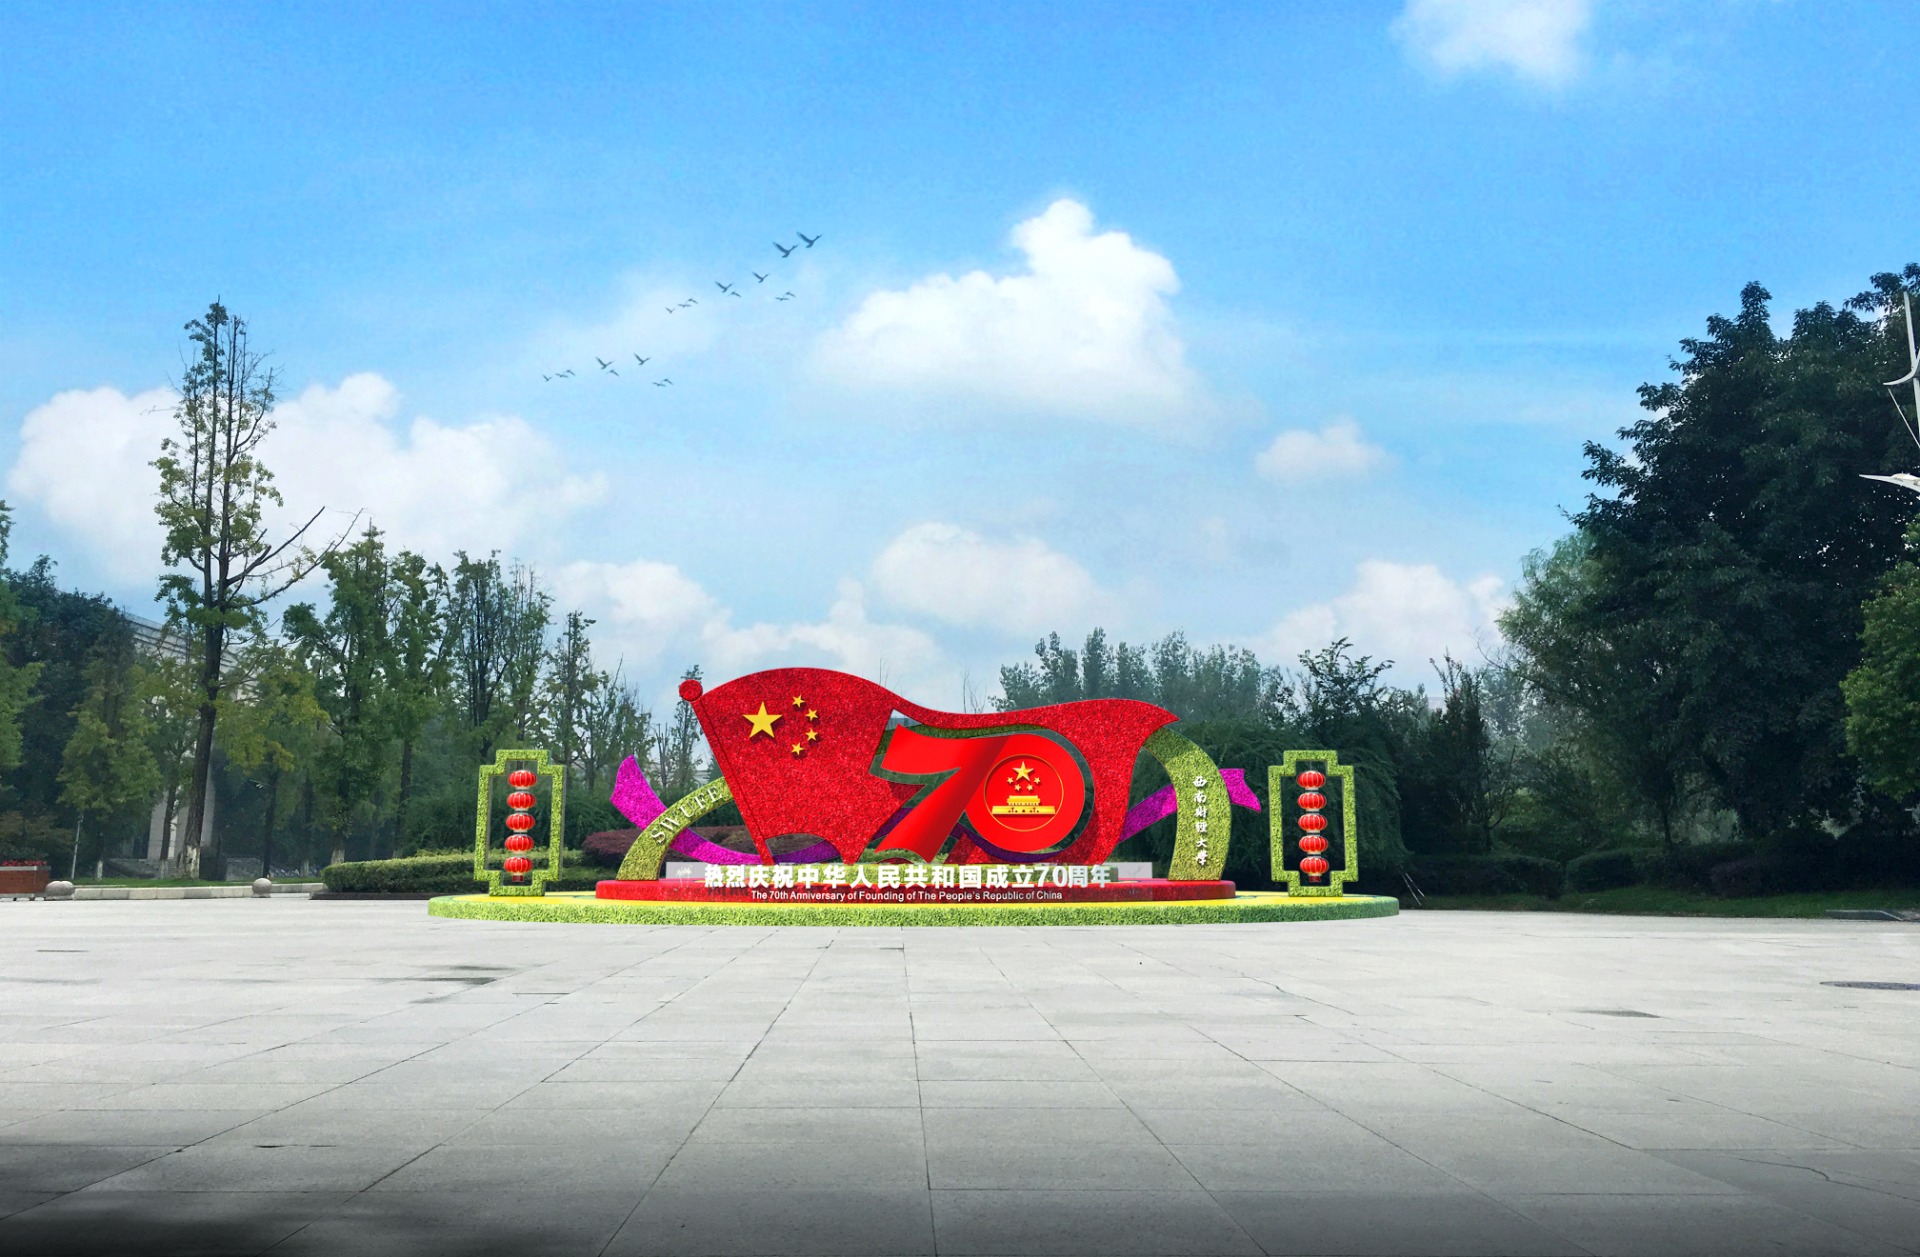 2019.9.10广告装饰-李中华13908087605，绿雕制作，成都，有3个地点及设计图3(1)